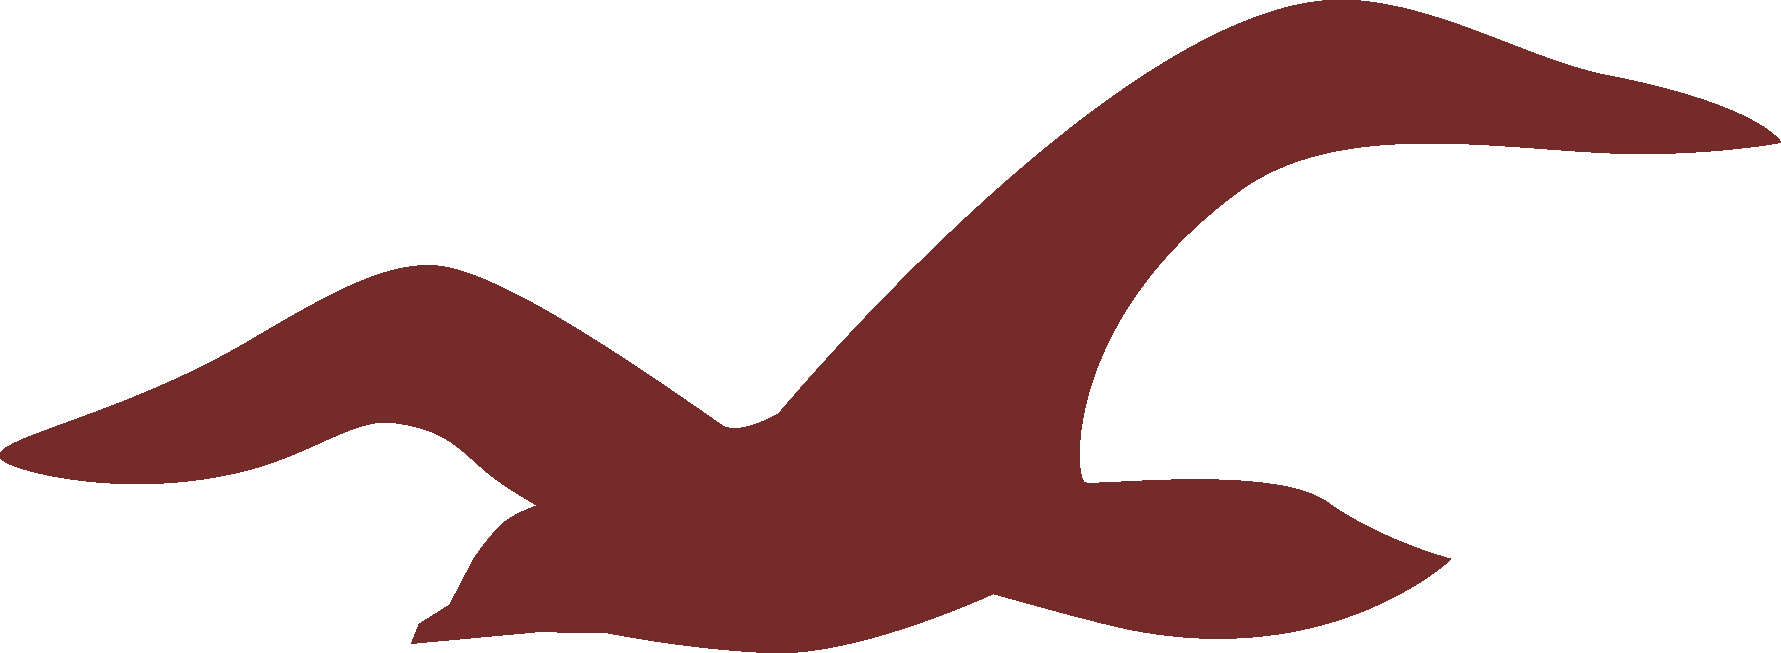 Hollister Logo png